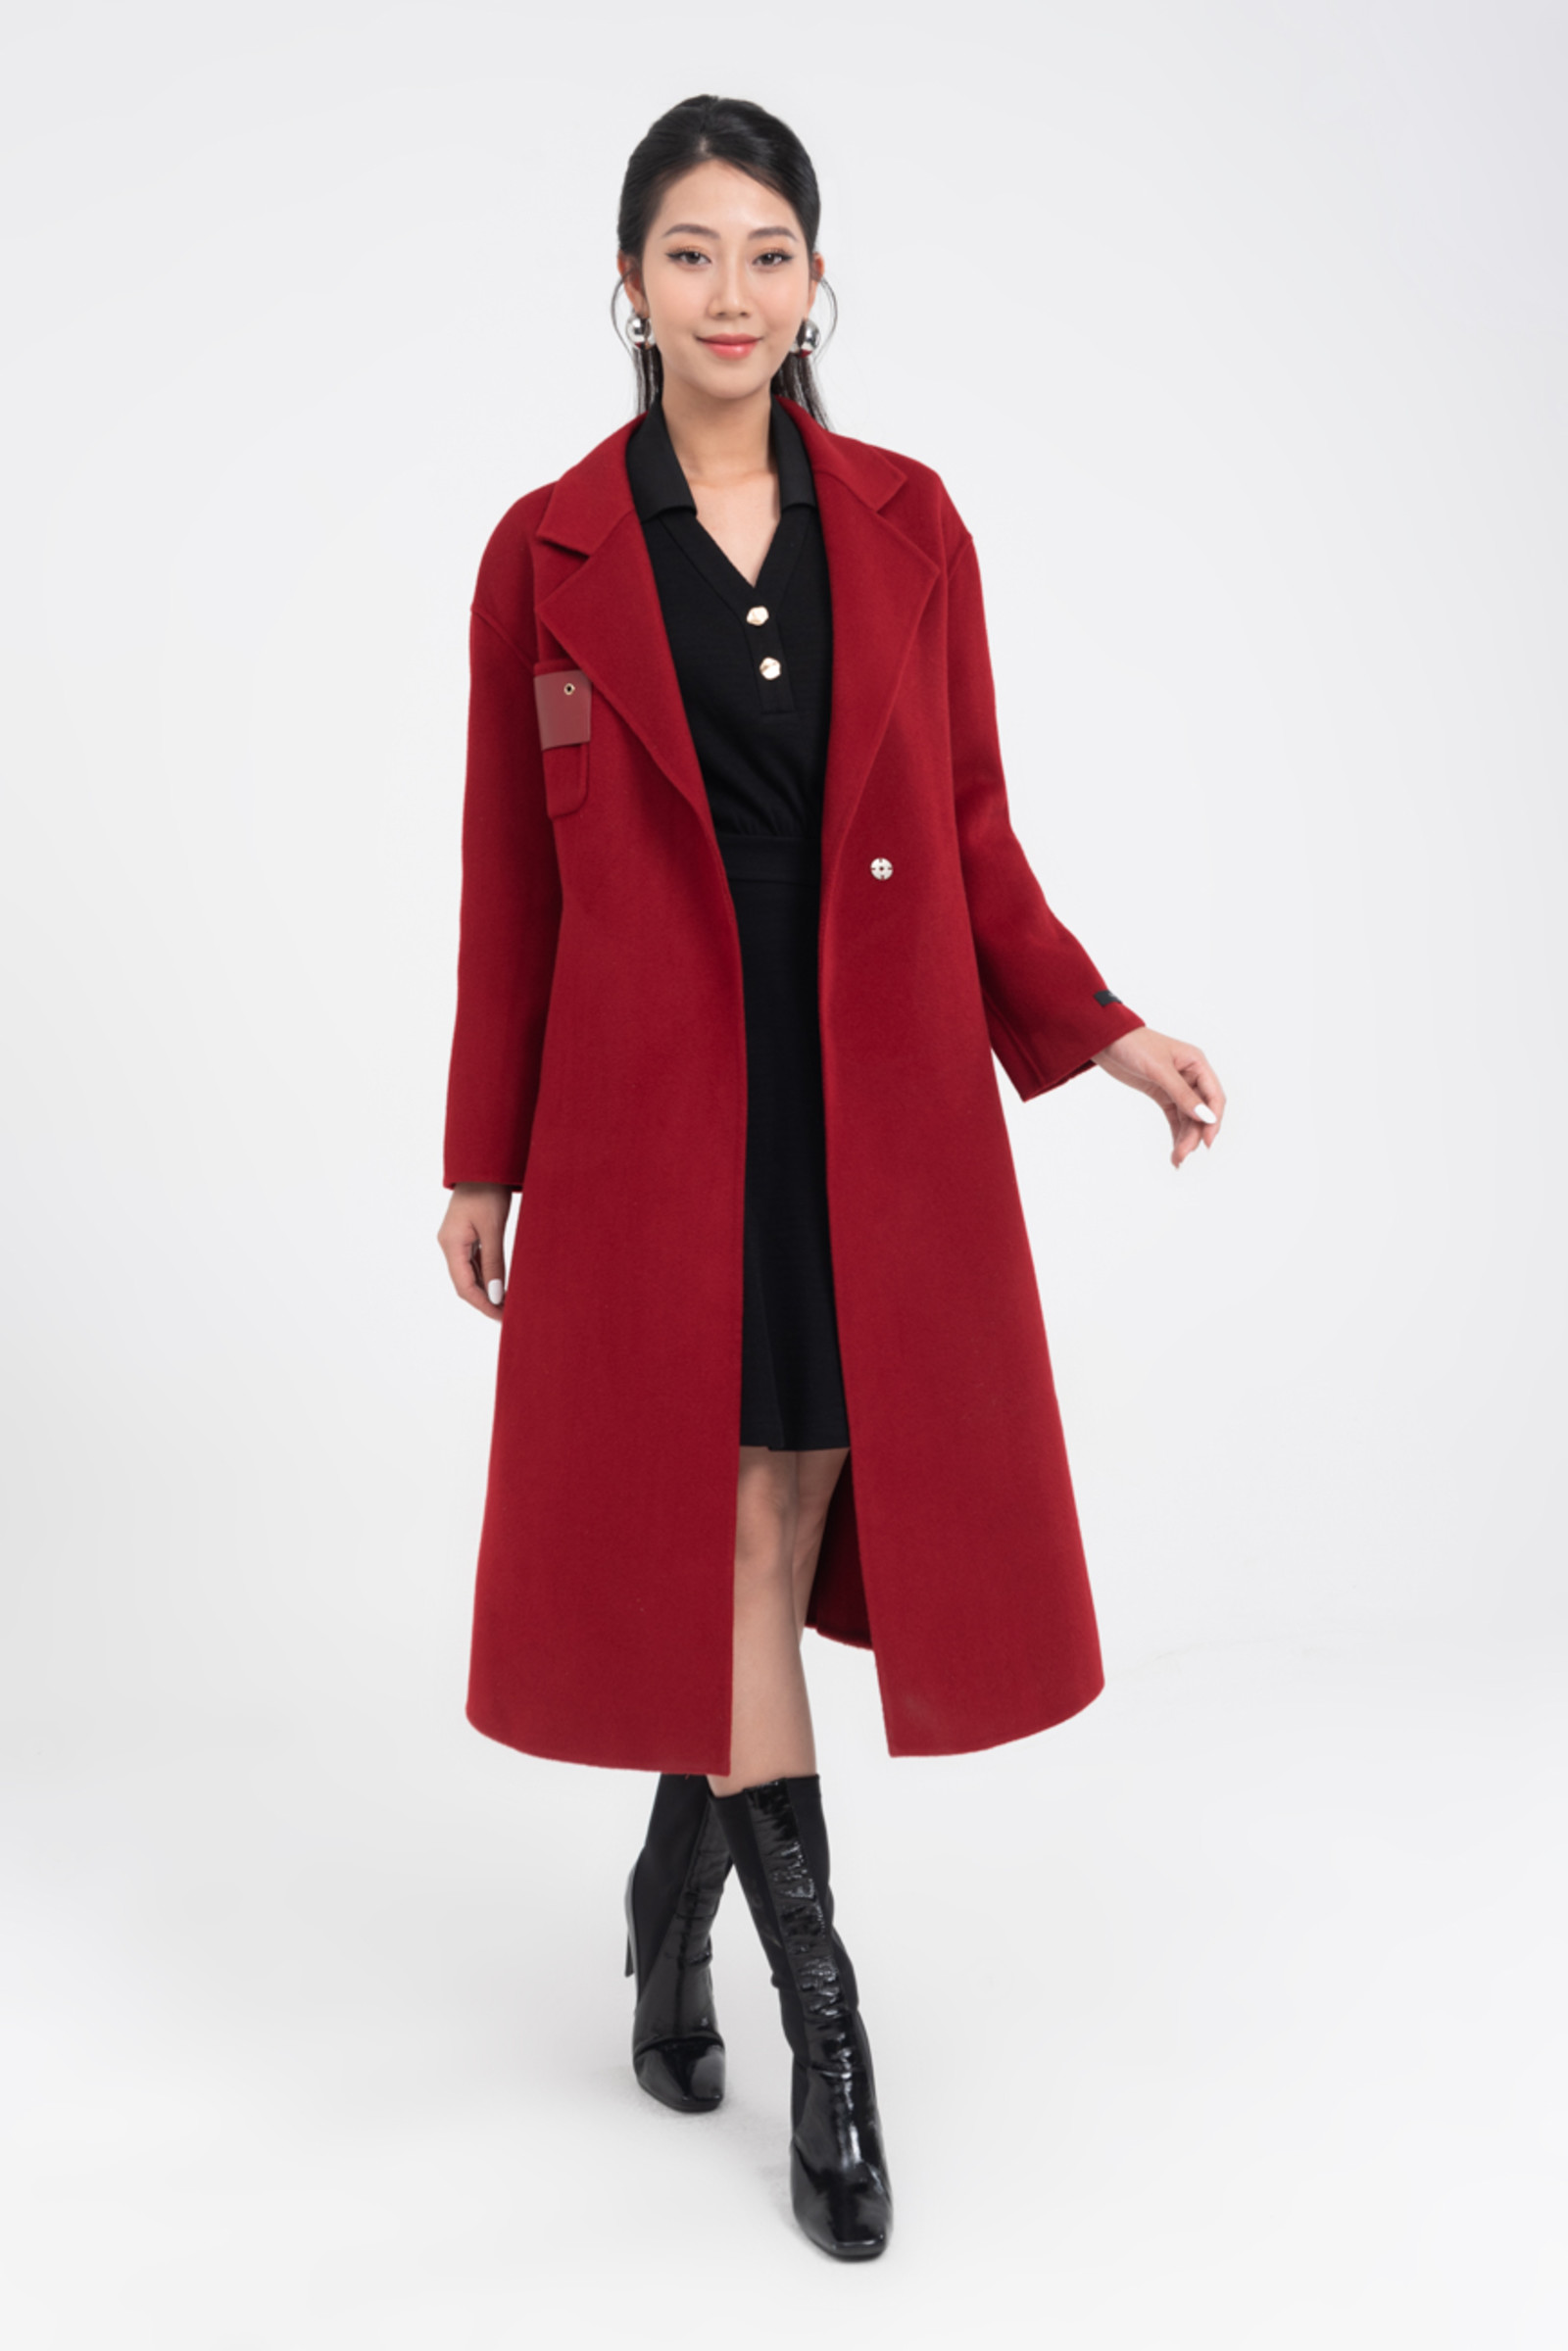 Áo manto nữ dạ lông cừu CIRRUS 830170 màu đỏ - Thời trang Cirrus